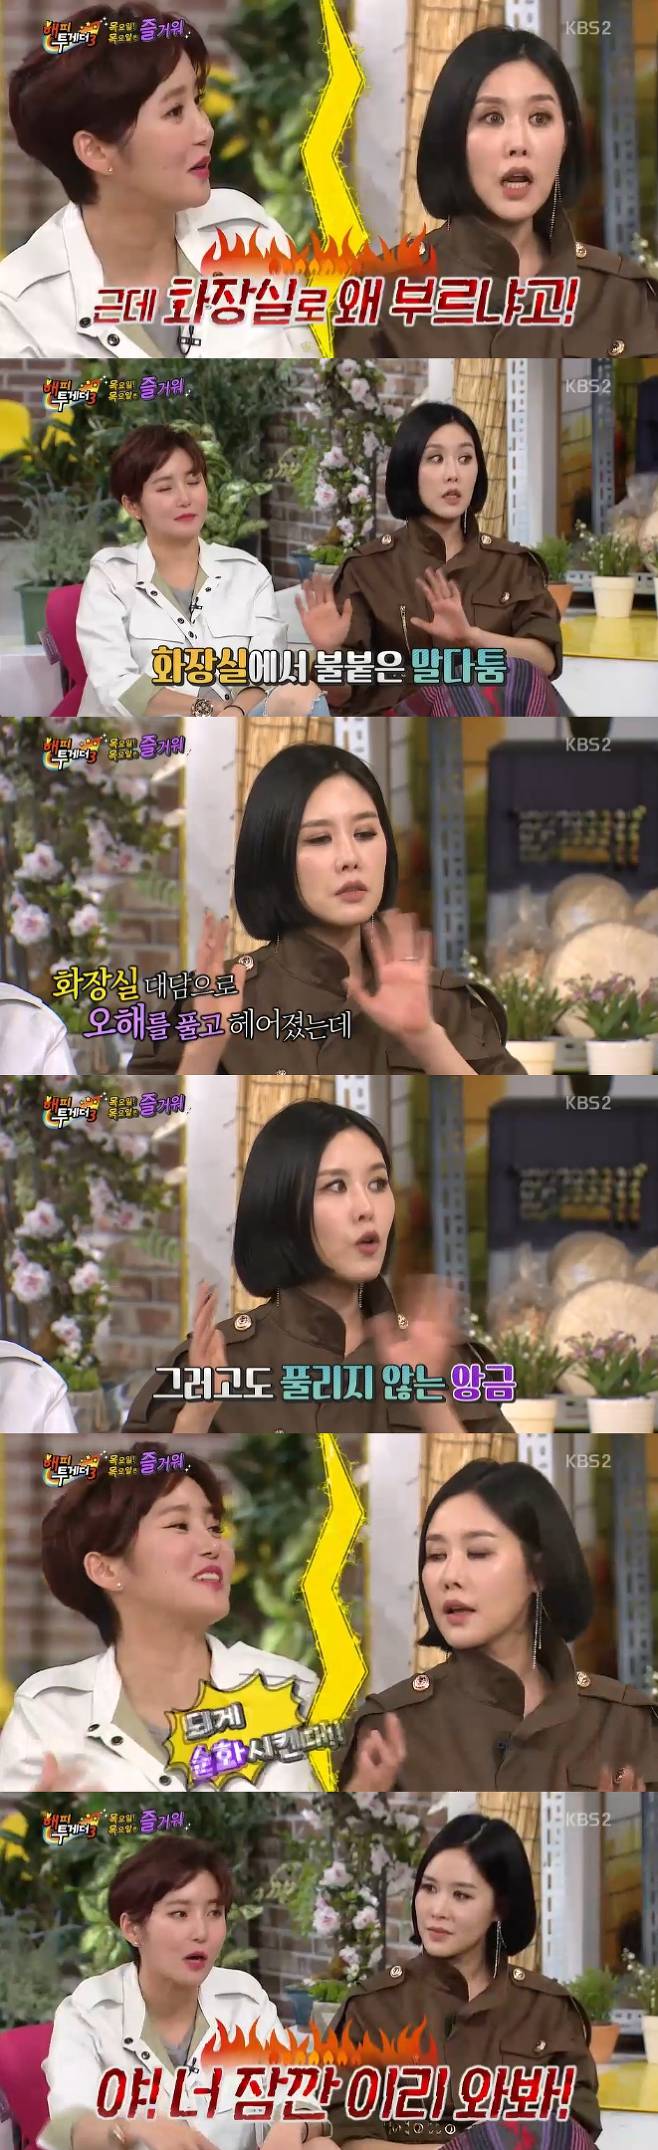 채리나 한현남 / 사진: KBS2 '해피투게더3' 방송 캡처